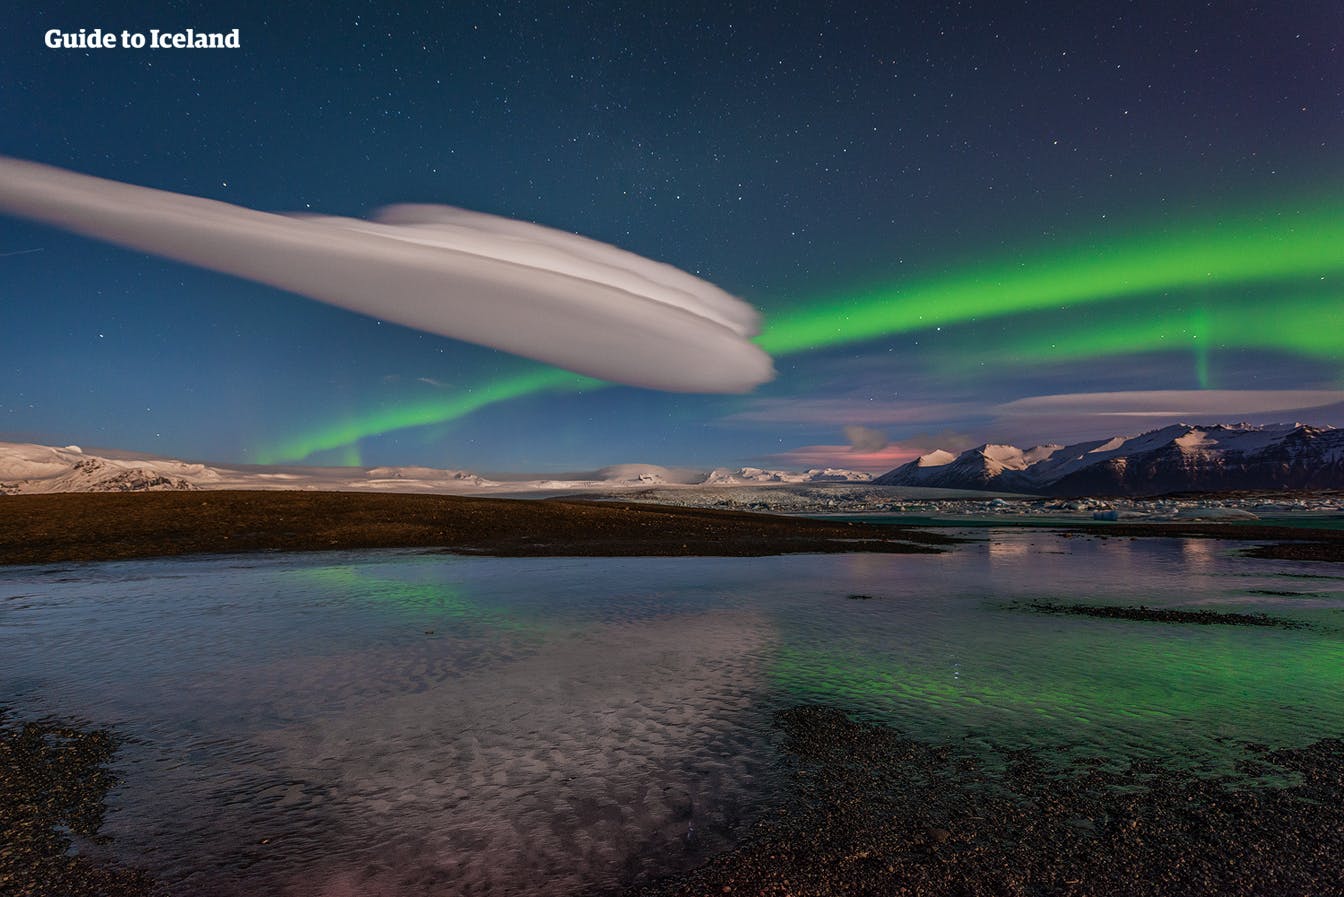 Les magnifiques aurores boréales jouent dans le ciel et recouvrent le lagon glaciaire de Jökulsárlón.